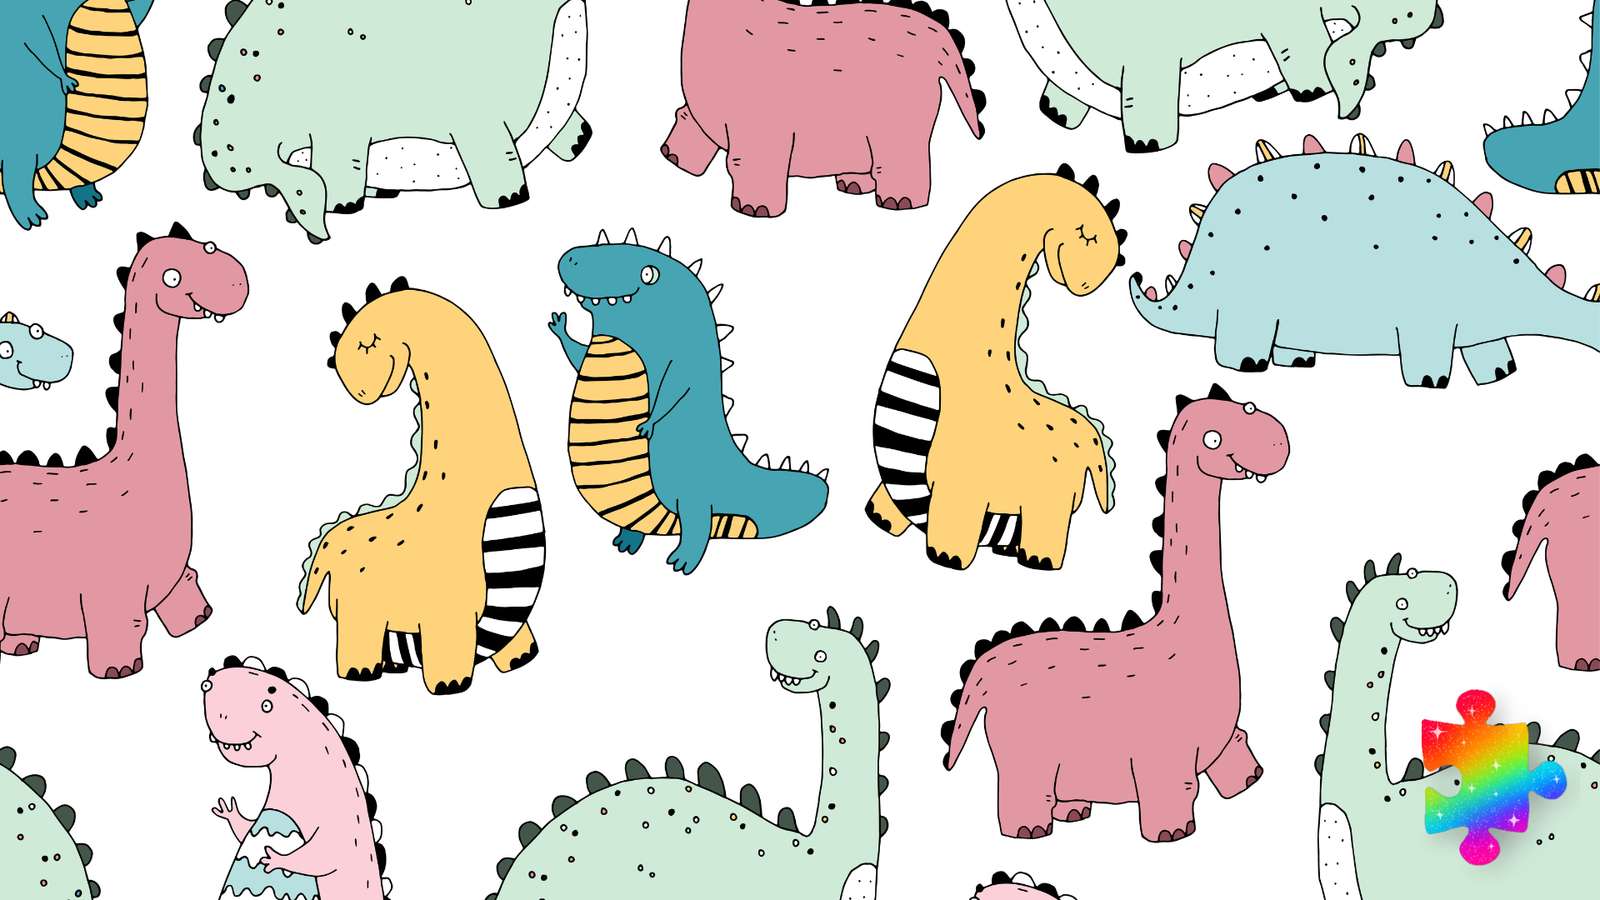 Kleurrijke dinosaurussen online puzzel